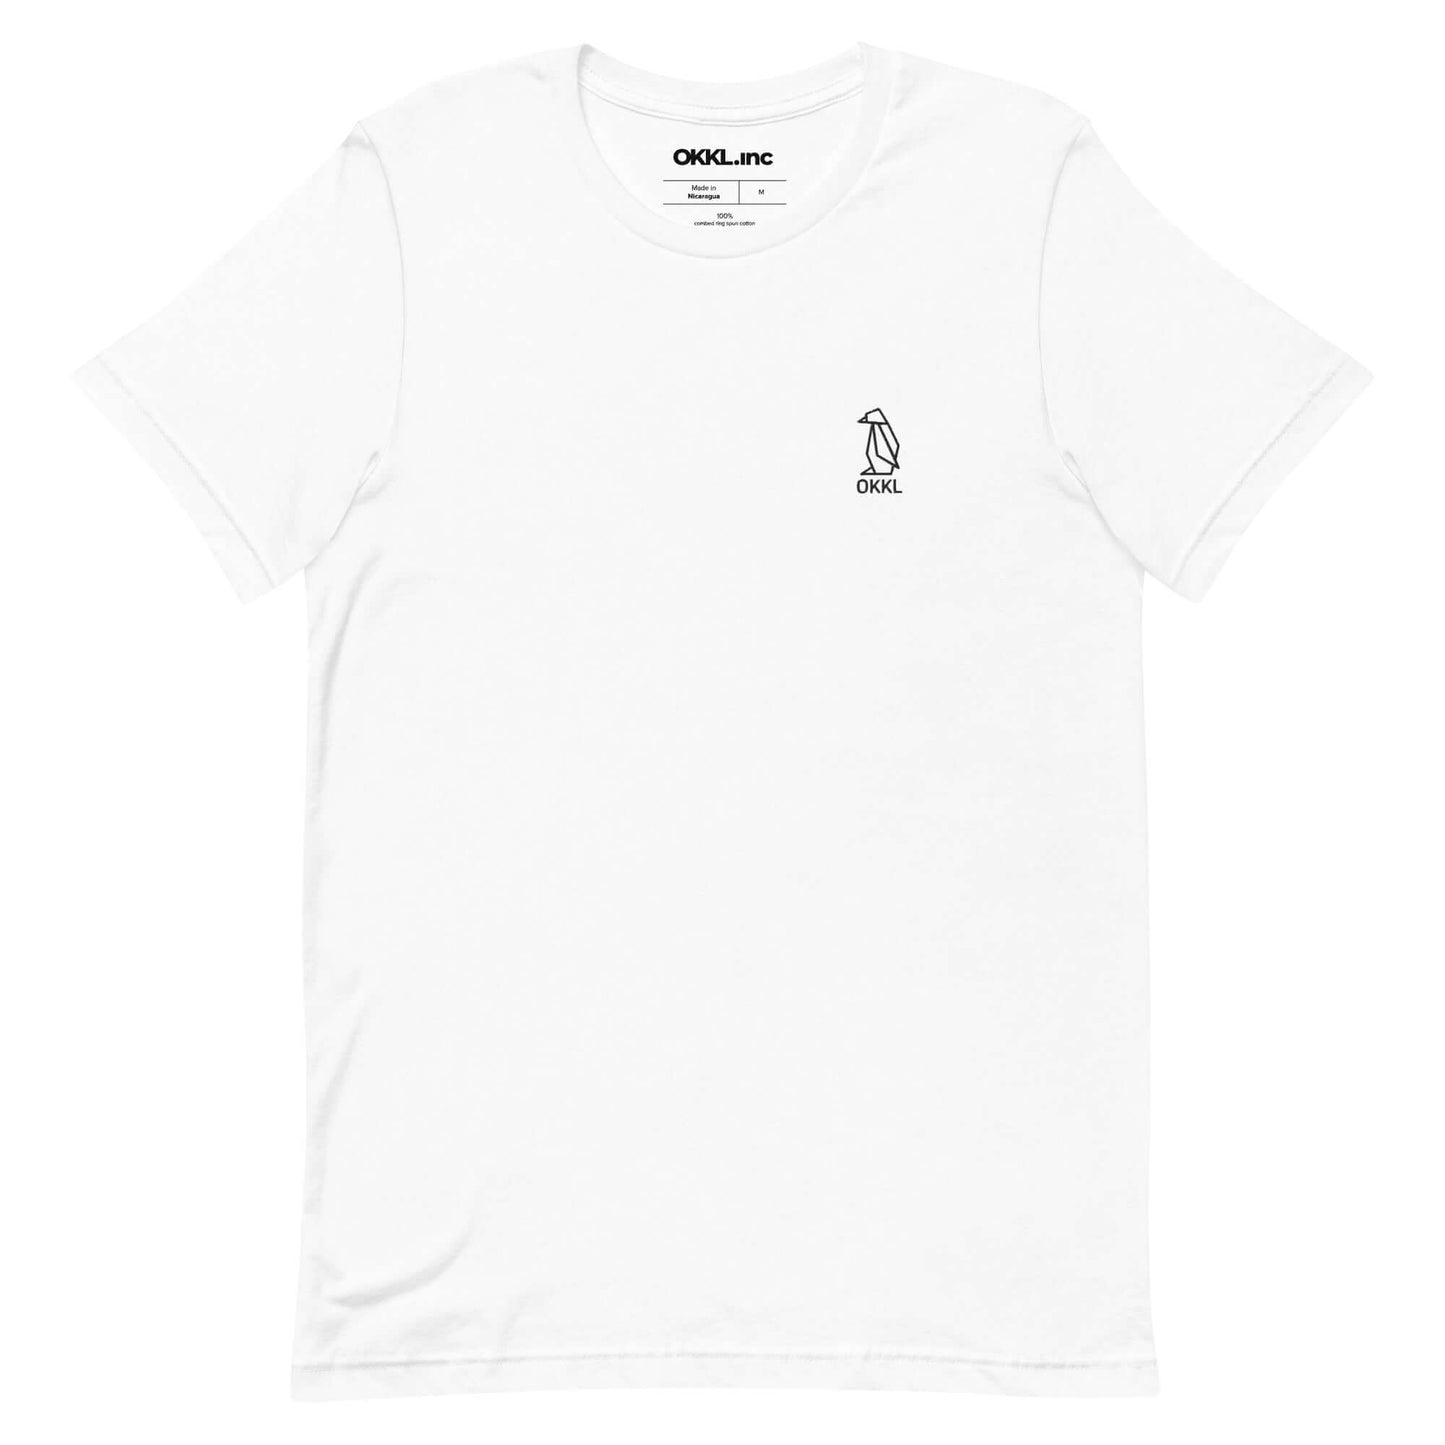 OKKL Penguin: White Unisex t-shirt